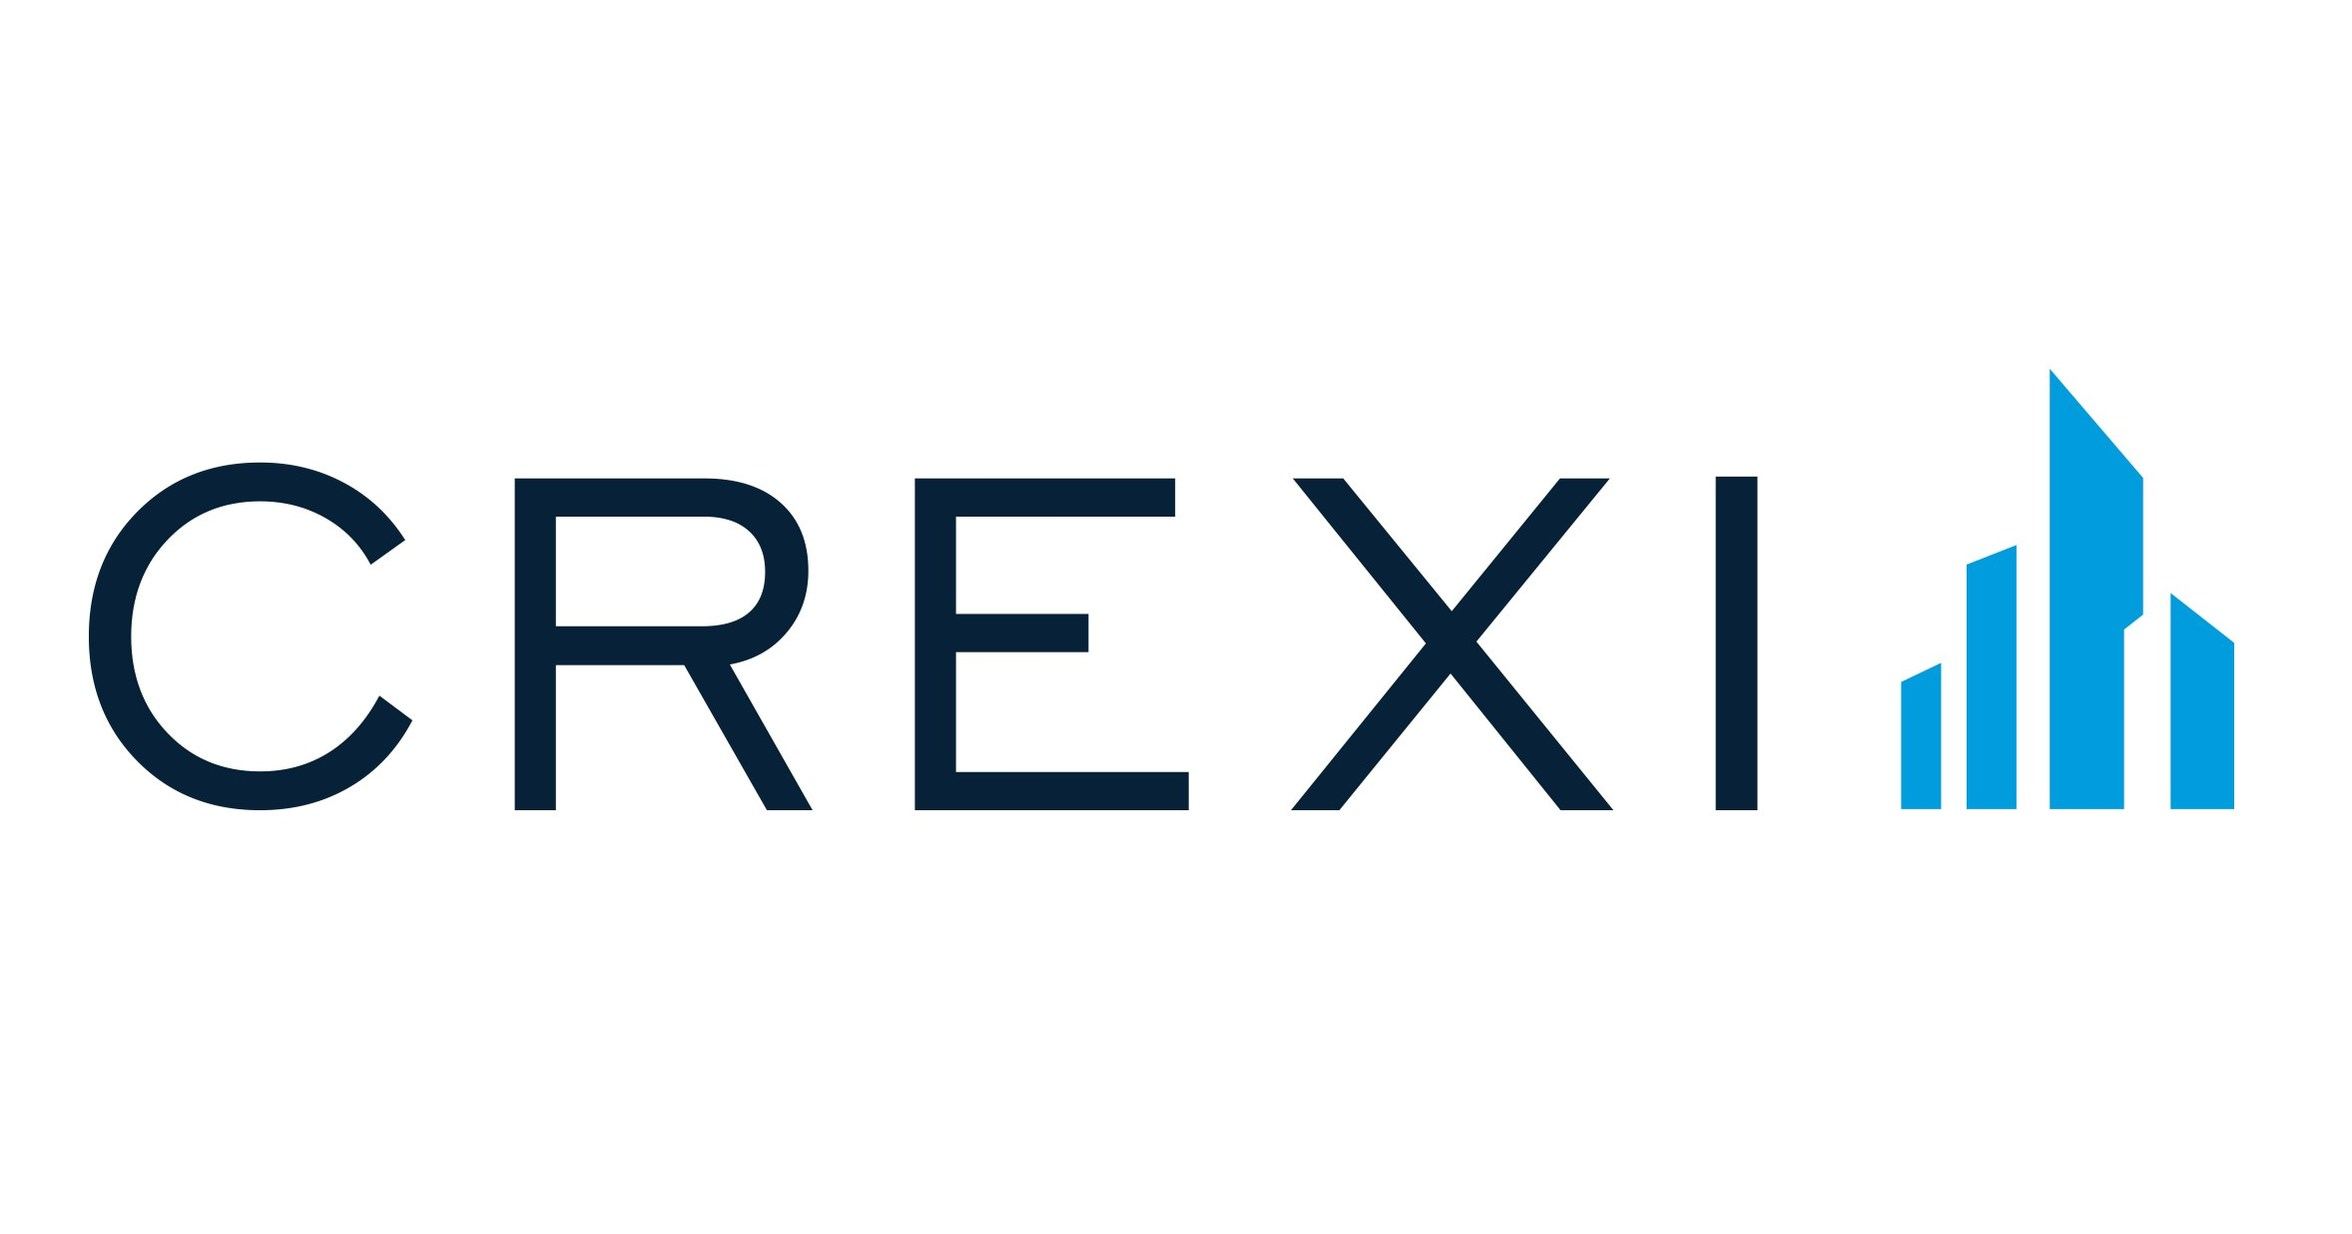 CREXI software for real estate listing management platform